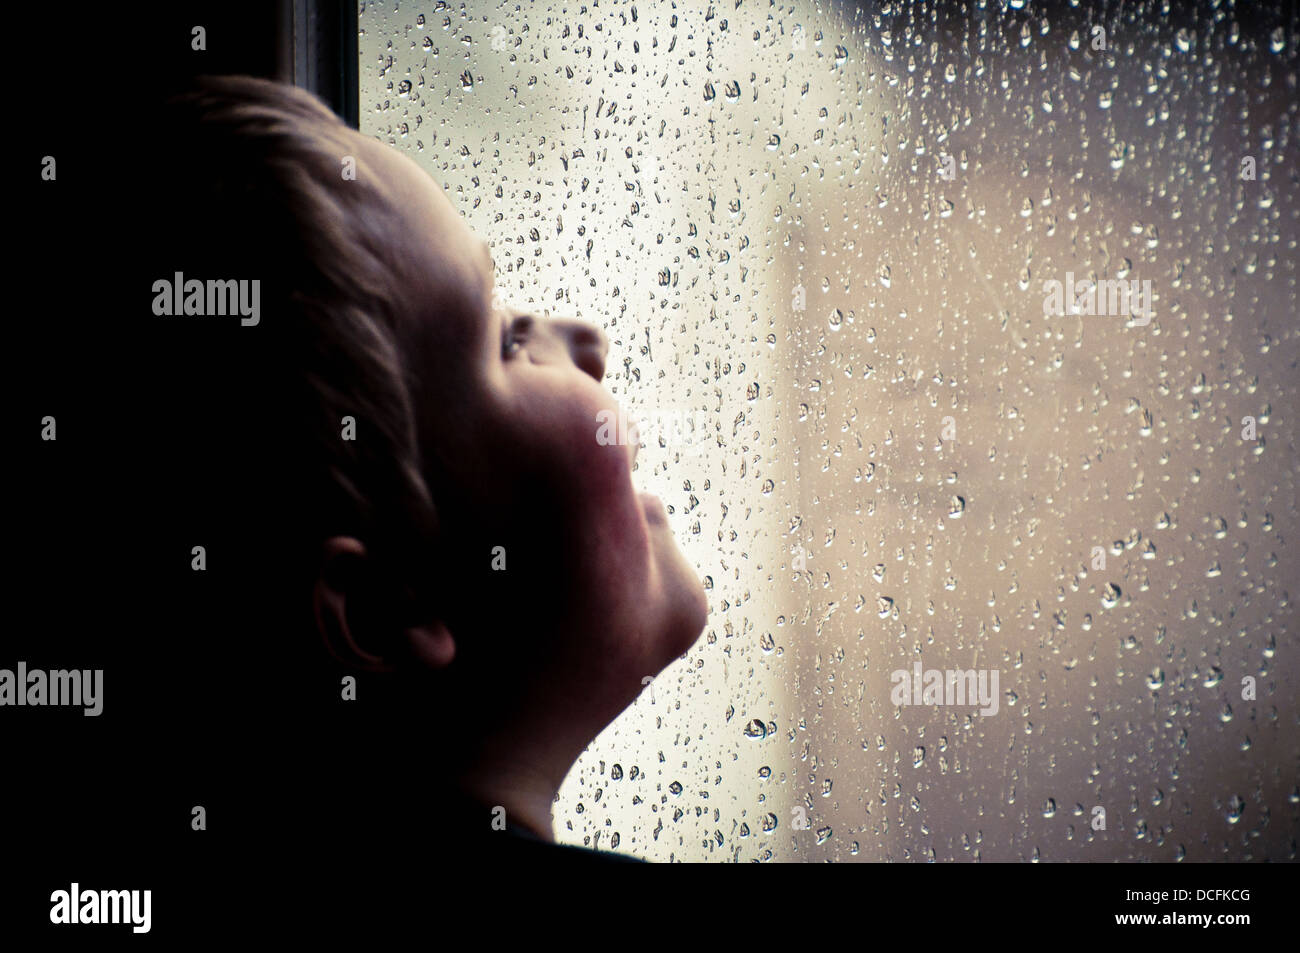 Child watching the rain Stock Photo